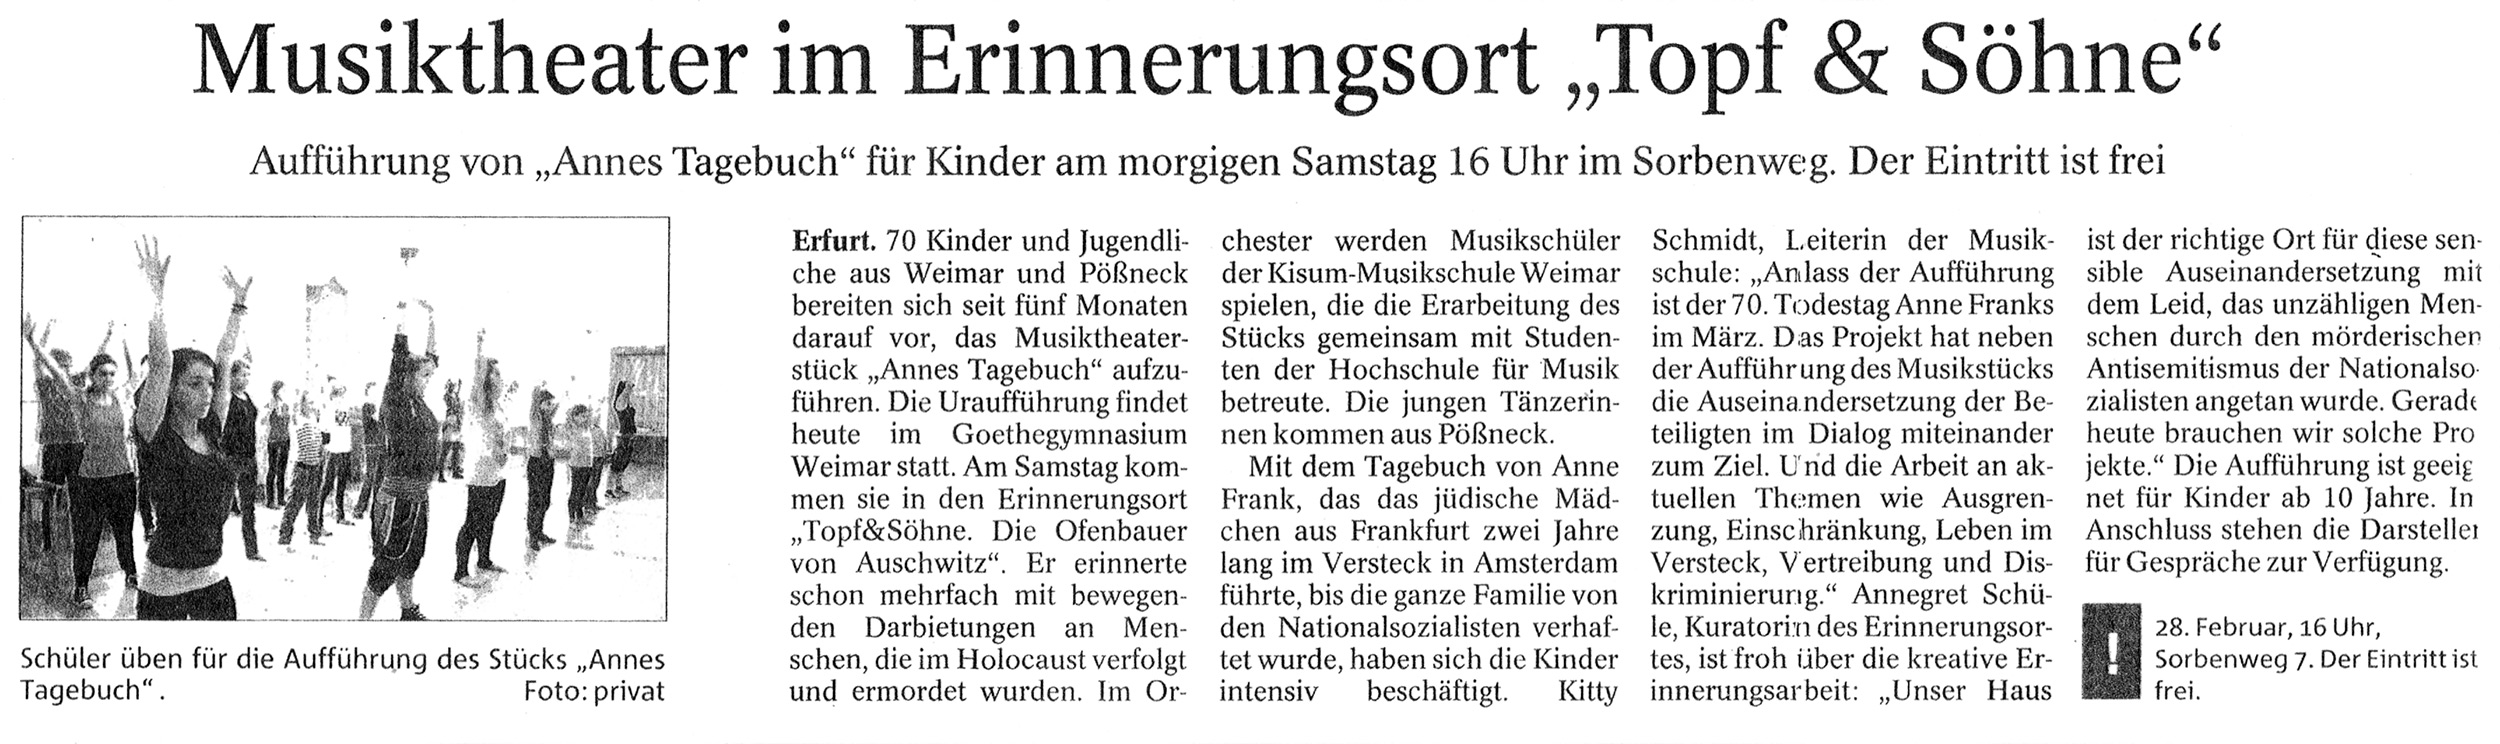 15.02.2015, Thüringer Allgemeine